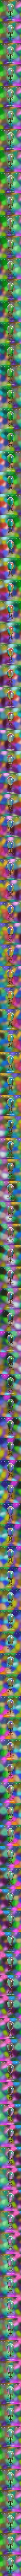 Fabergé Egg: Fantasy